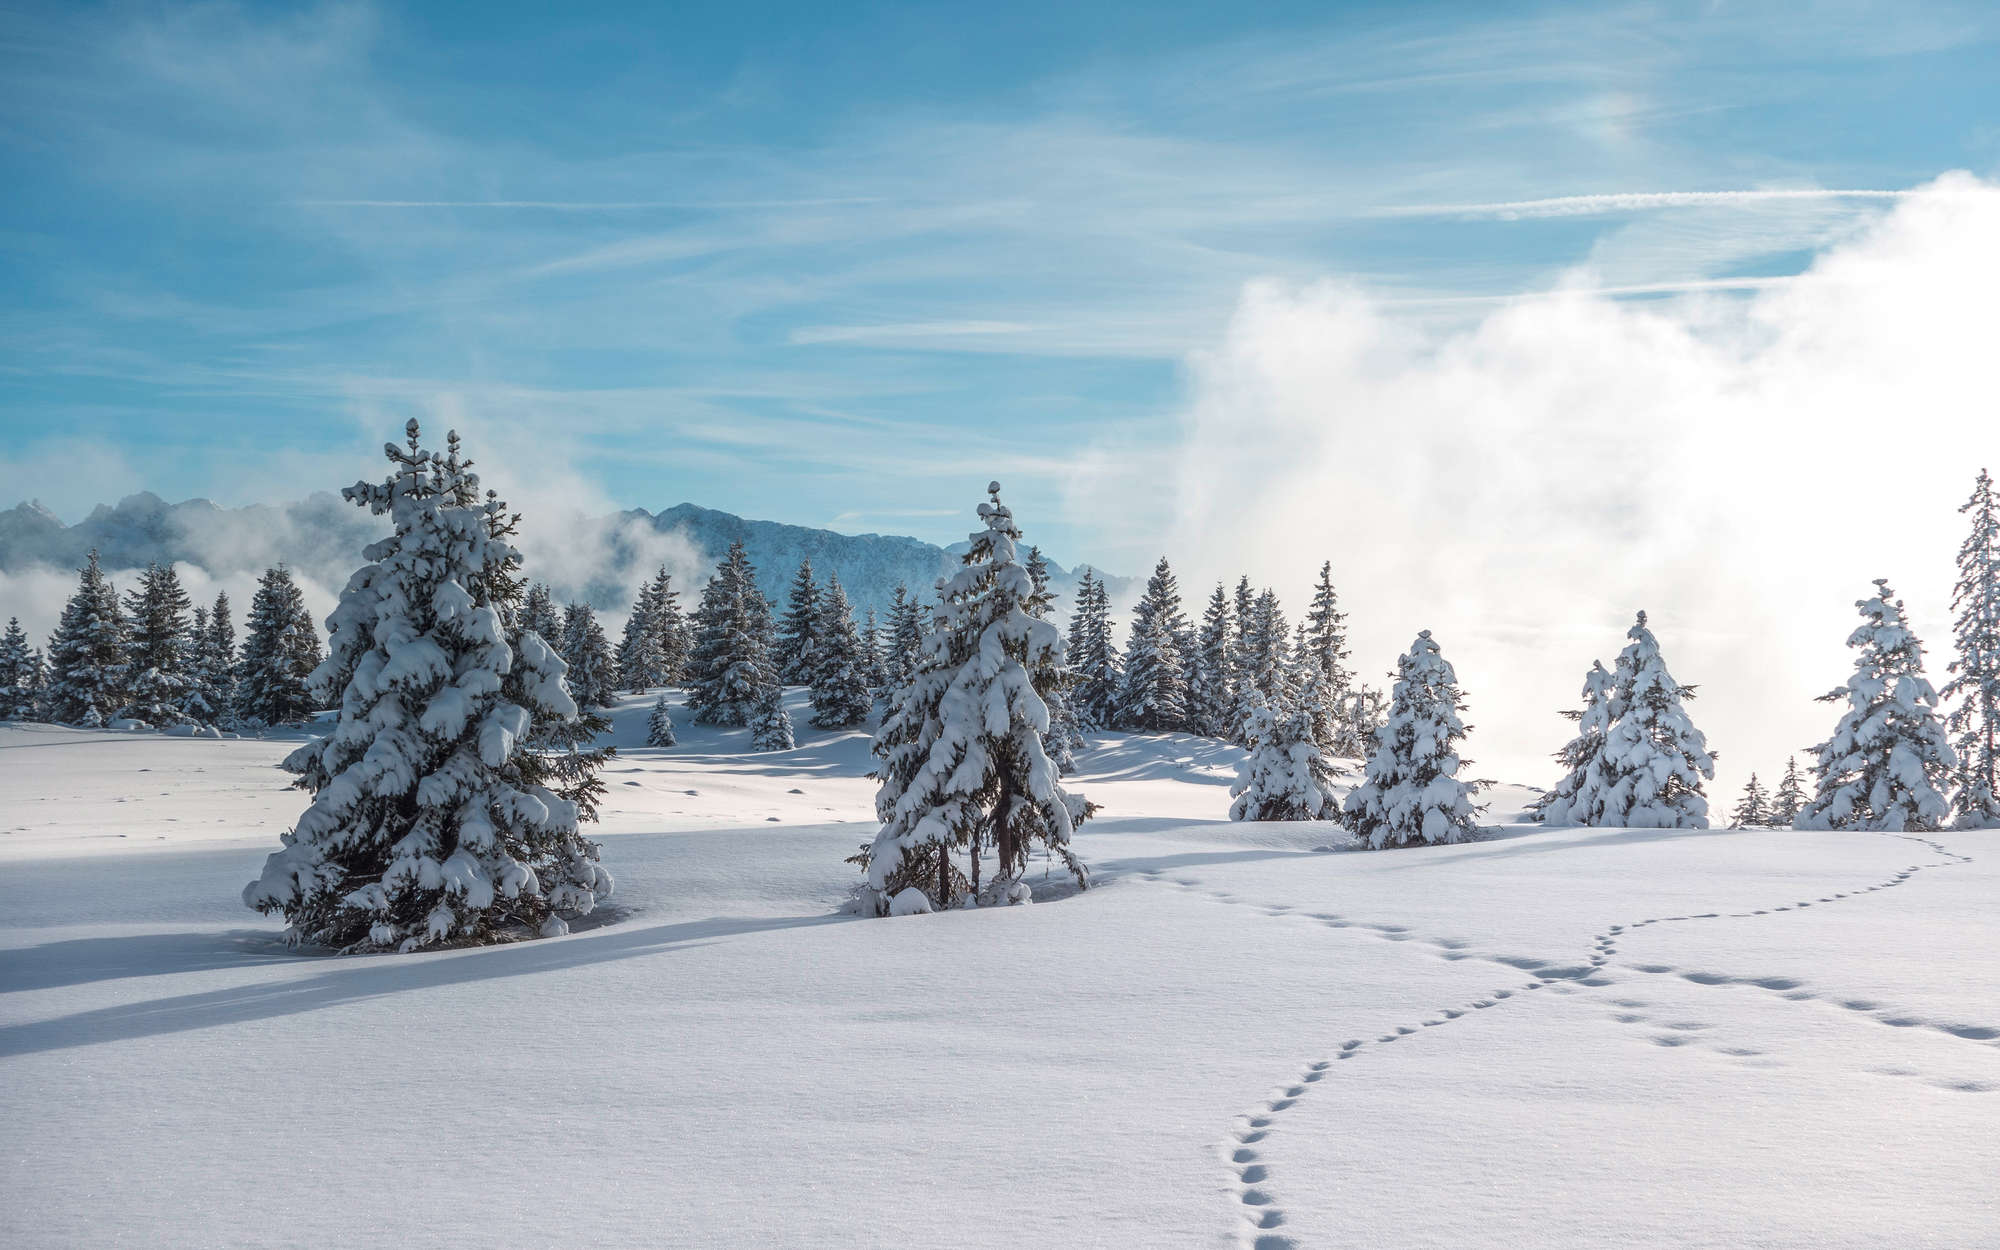             Fotomurali Neve e impronte nella foresta invernale - Pile liscio opaco
        